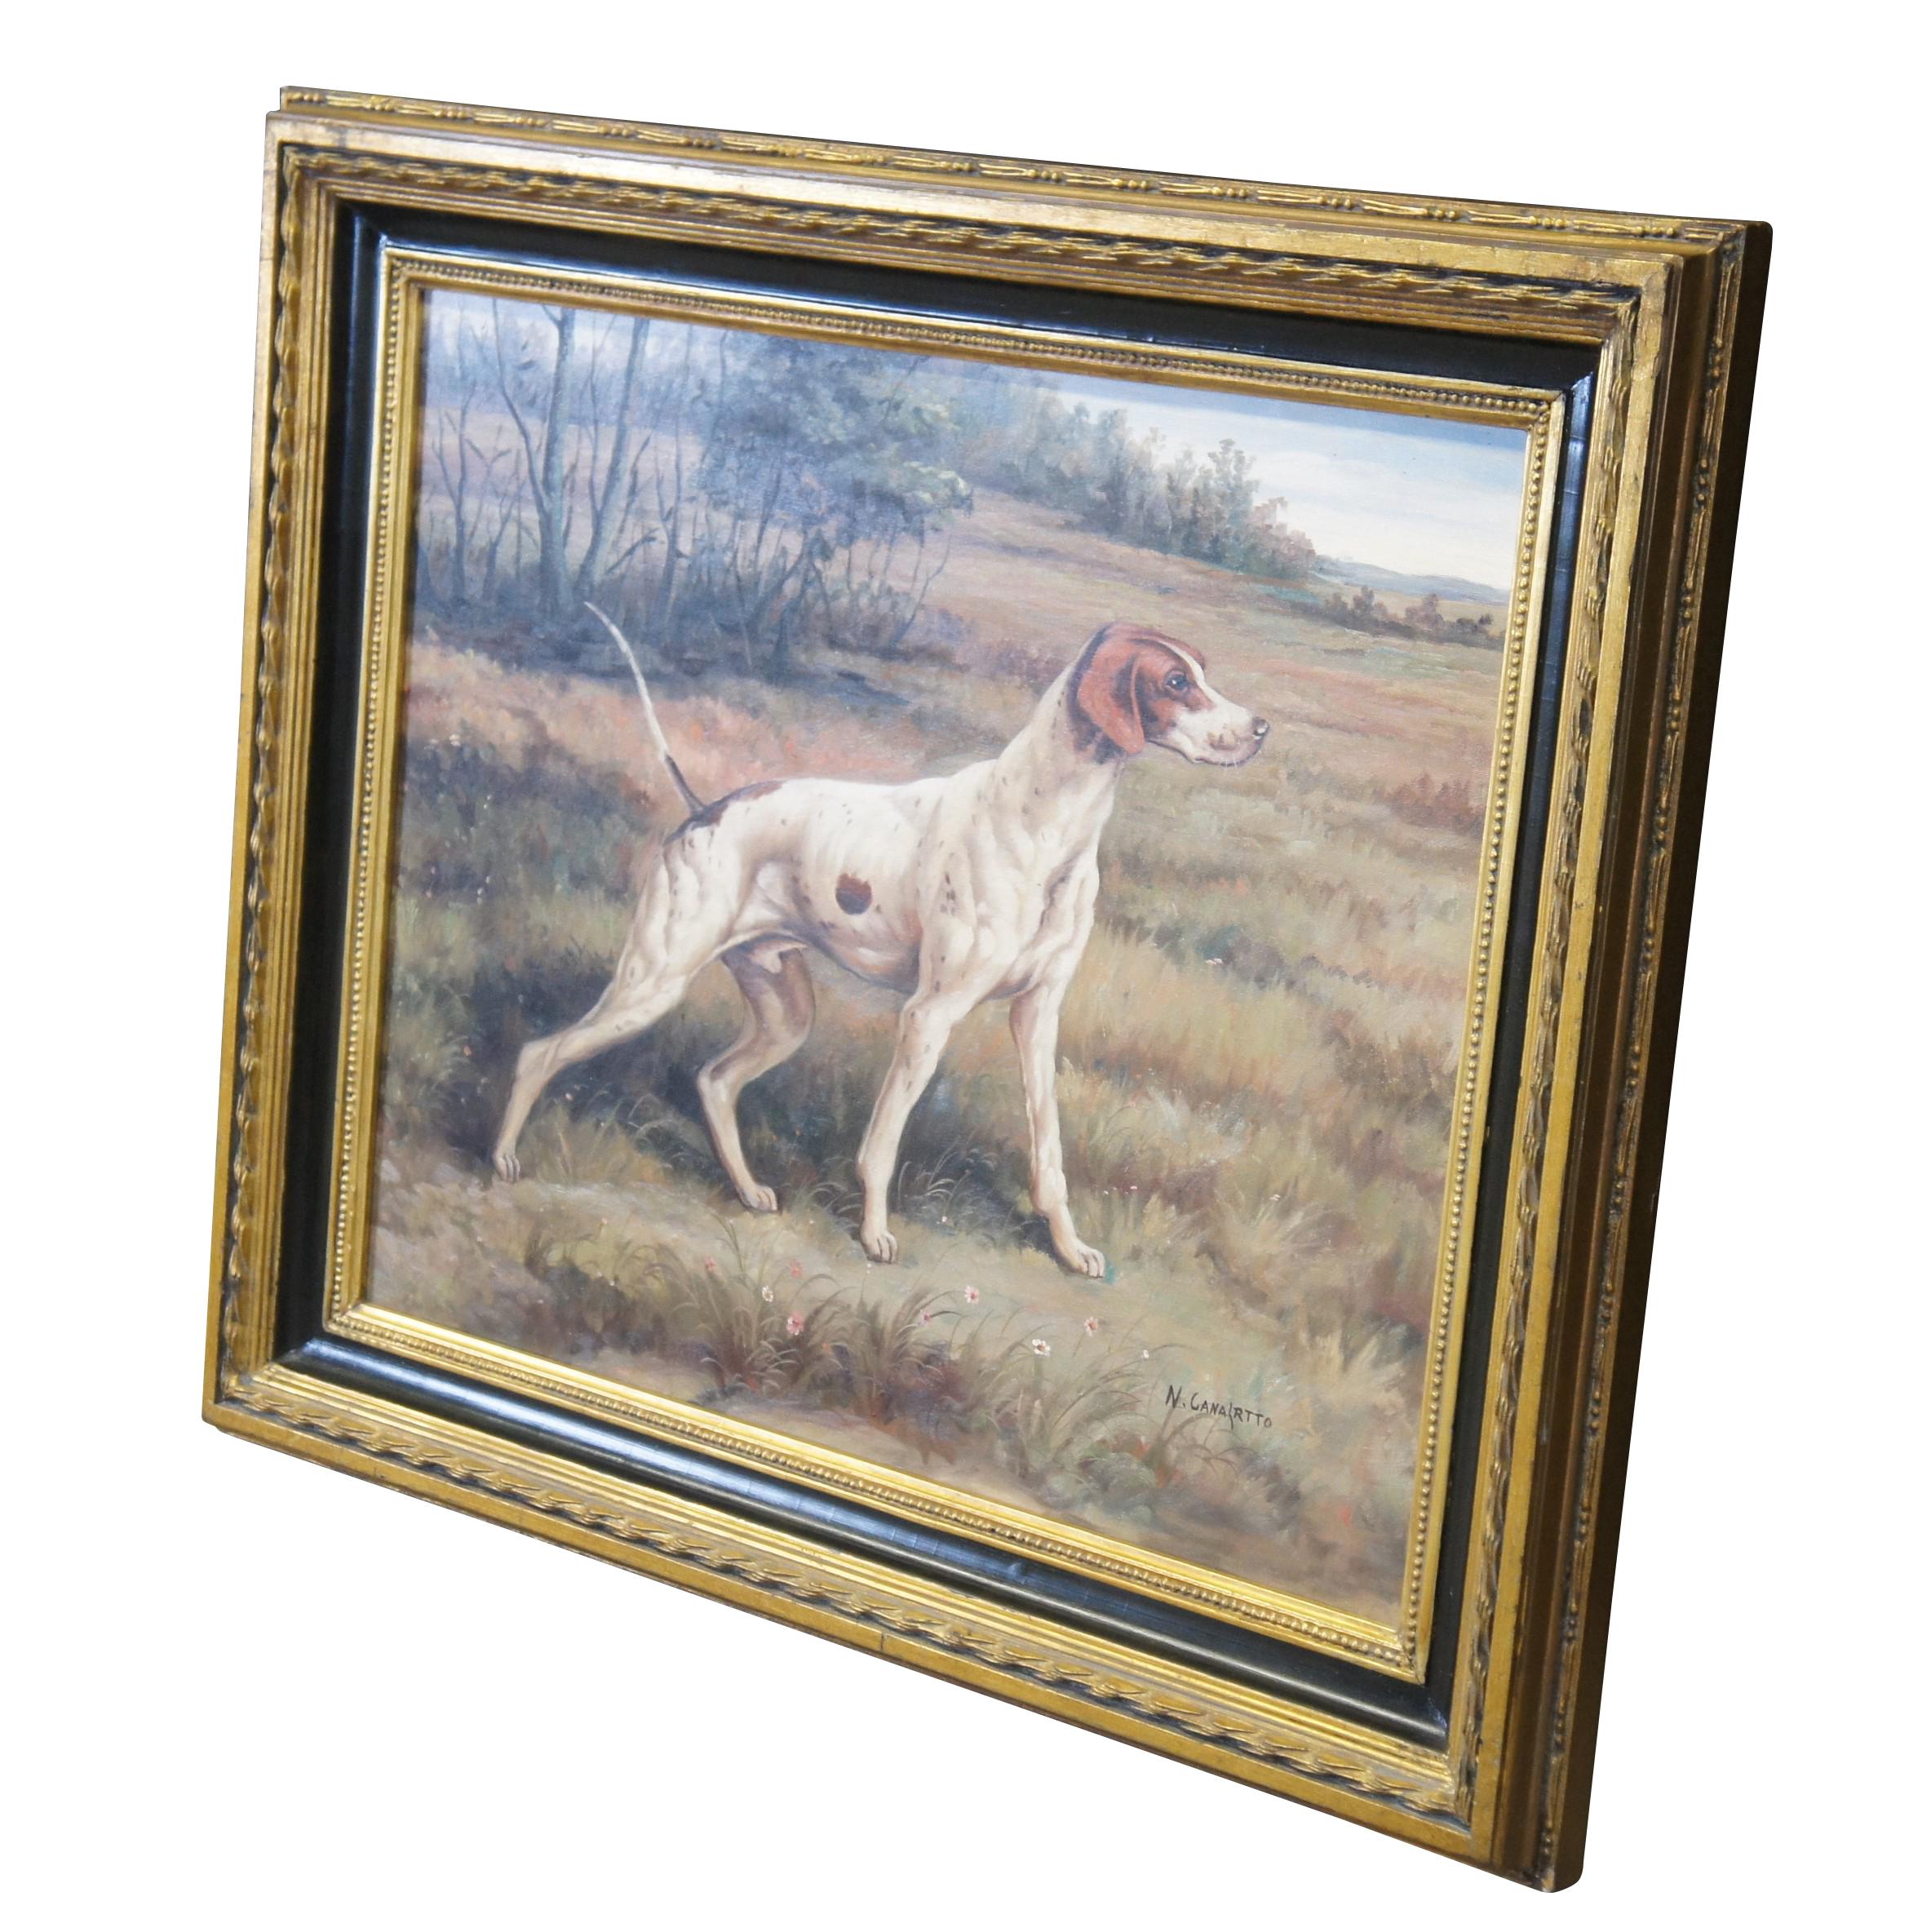 Vintage-Ölgemälde auf Leinwand mit dem Porträt eines Vorstehhundes / Fuchshundes im Feld / auf dem Land.  Signiert vom Künstler unten rechts.  Gerahmt in ebonisiertem Goldrahmen.

Abmessungen:
26.5